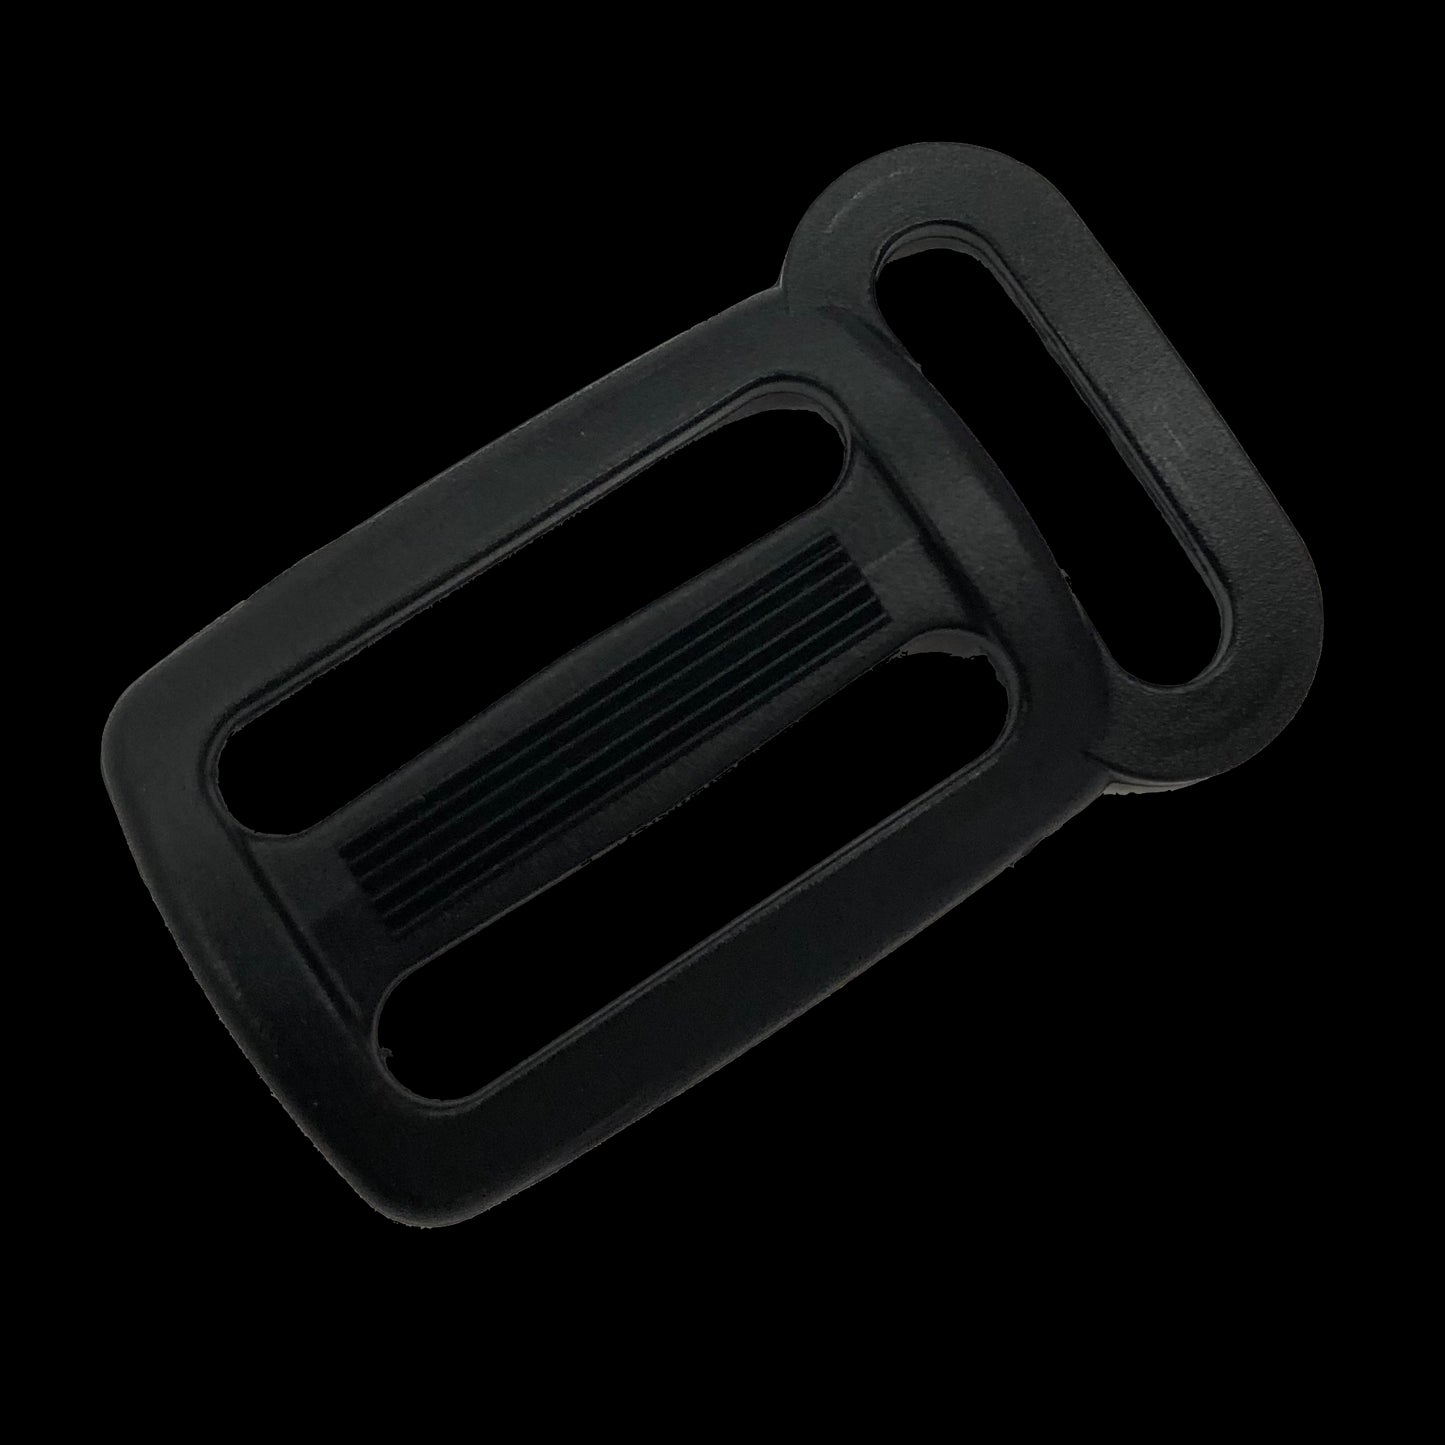 1 Inch Sternum Strap Adjuster Sliplok Buckle to 3/4 Inch Loop - Black (Sold per Each)